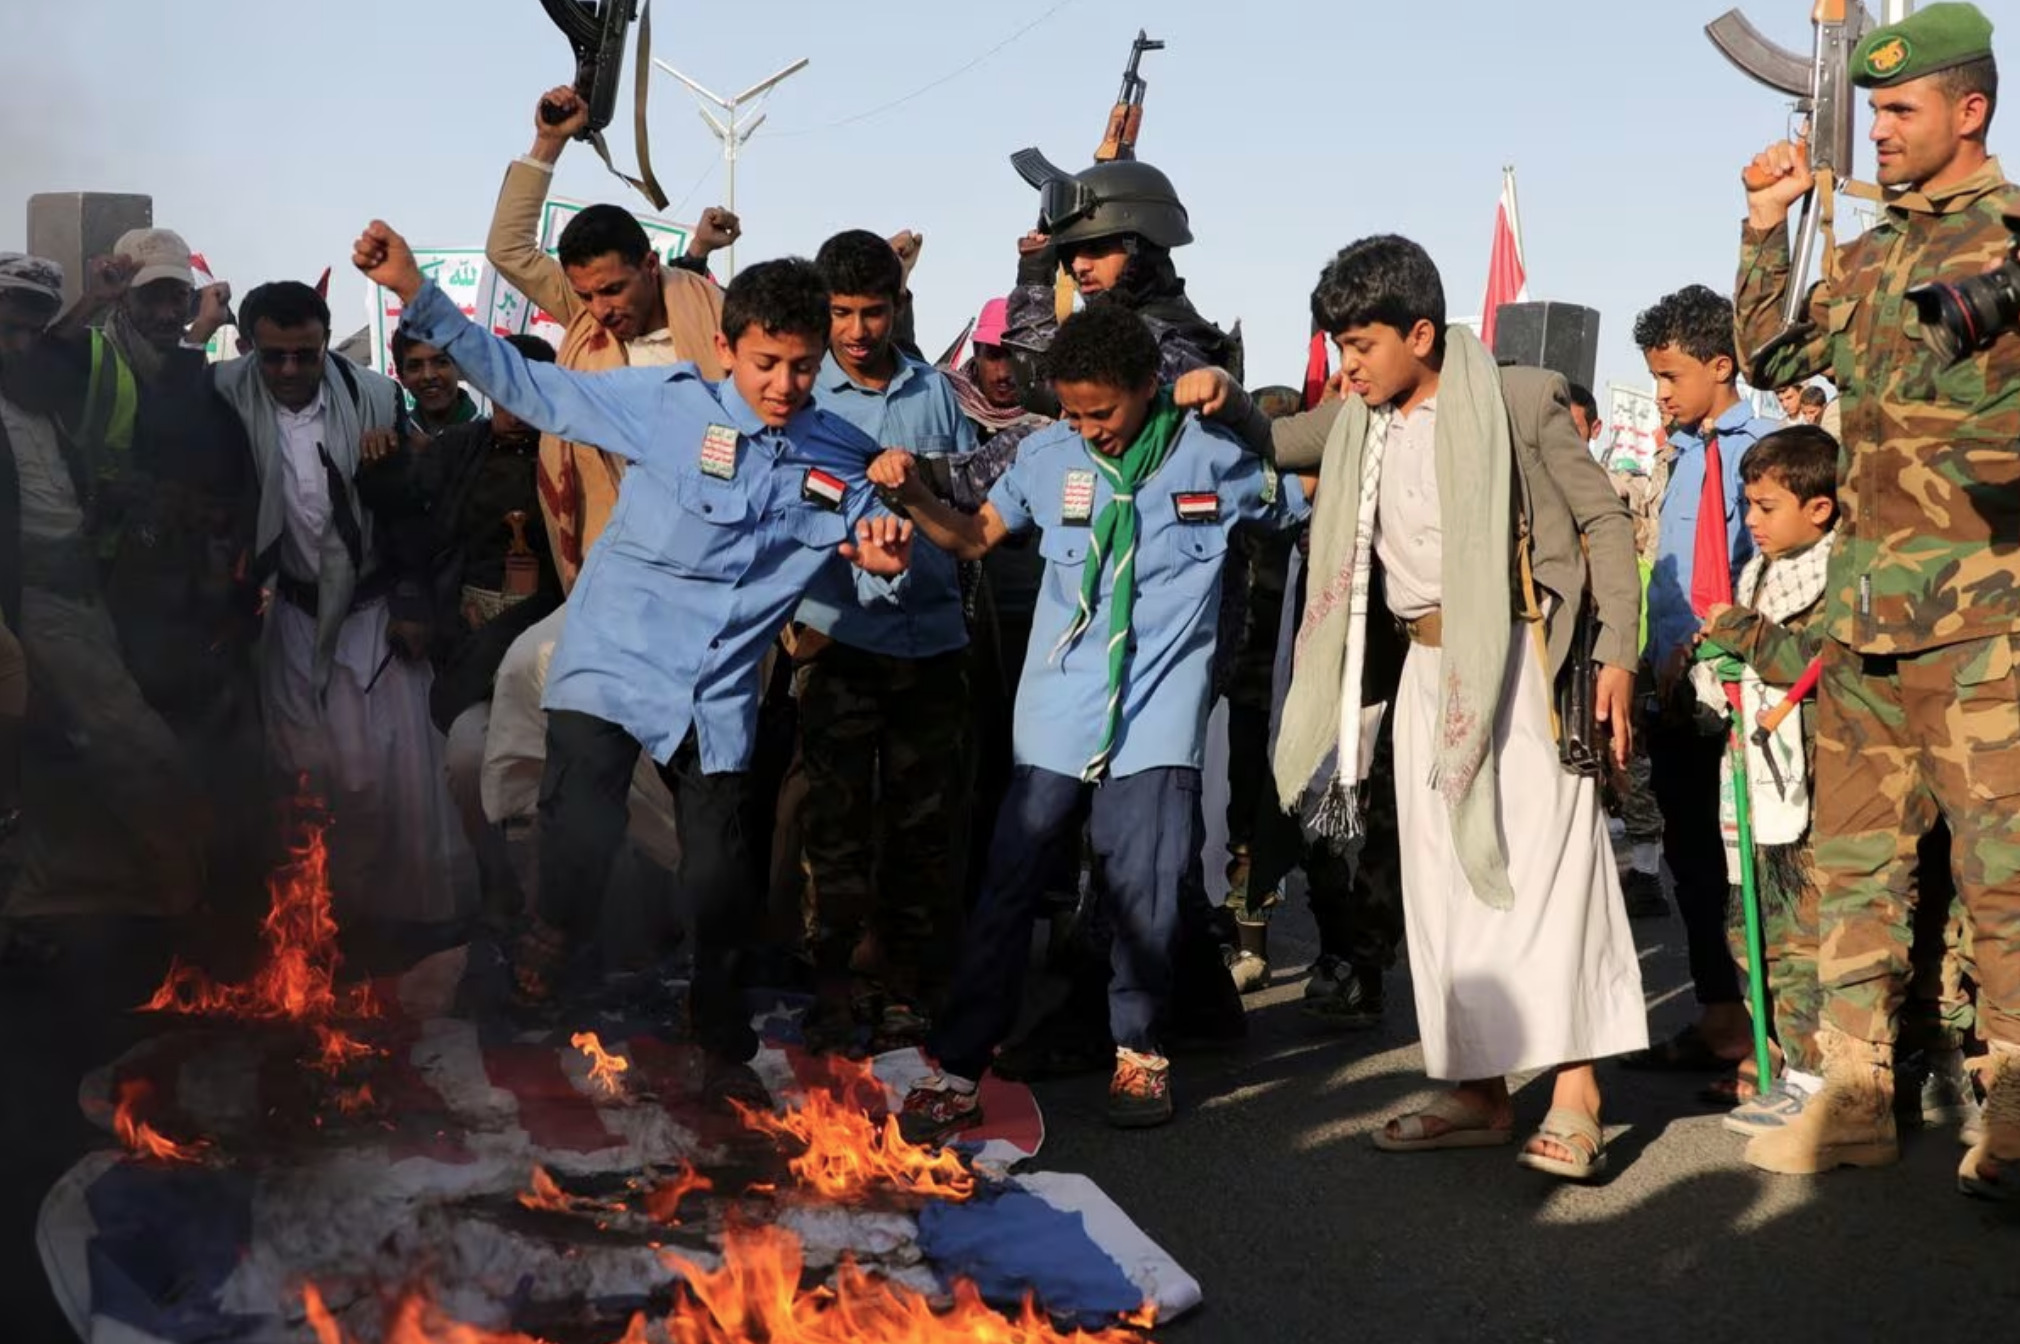 (ФОТО) Десятки тысяч человек вышли на демонстрации в Йемене после авиаударов США и Великобритании